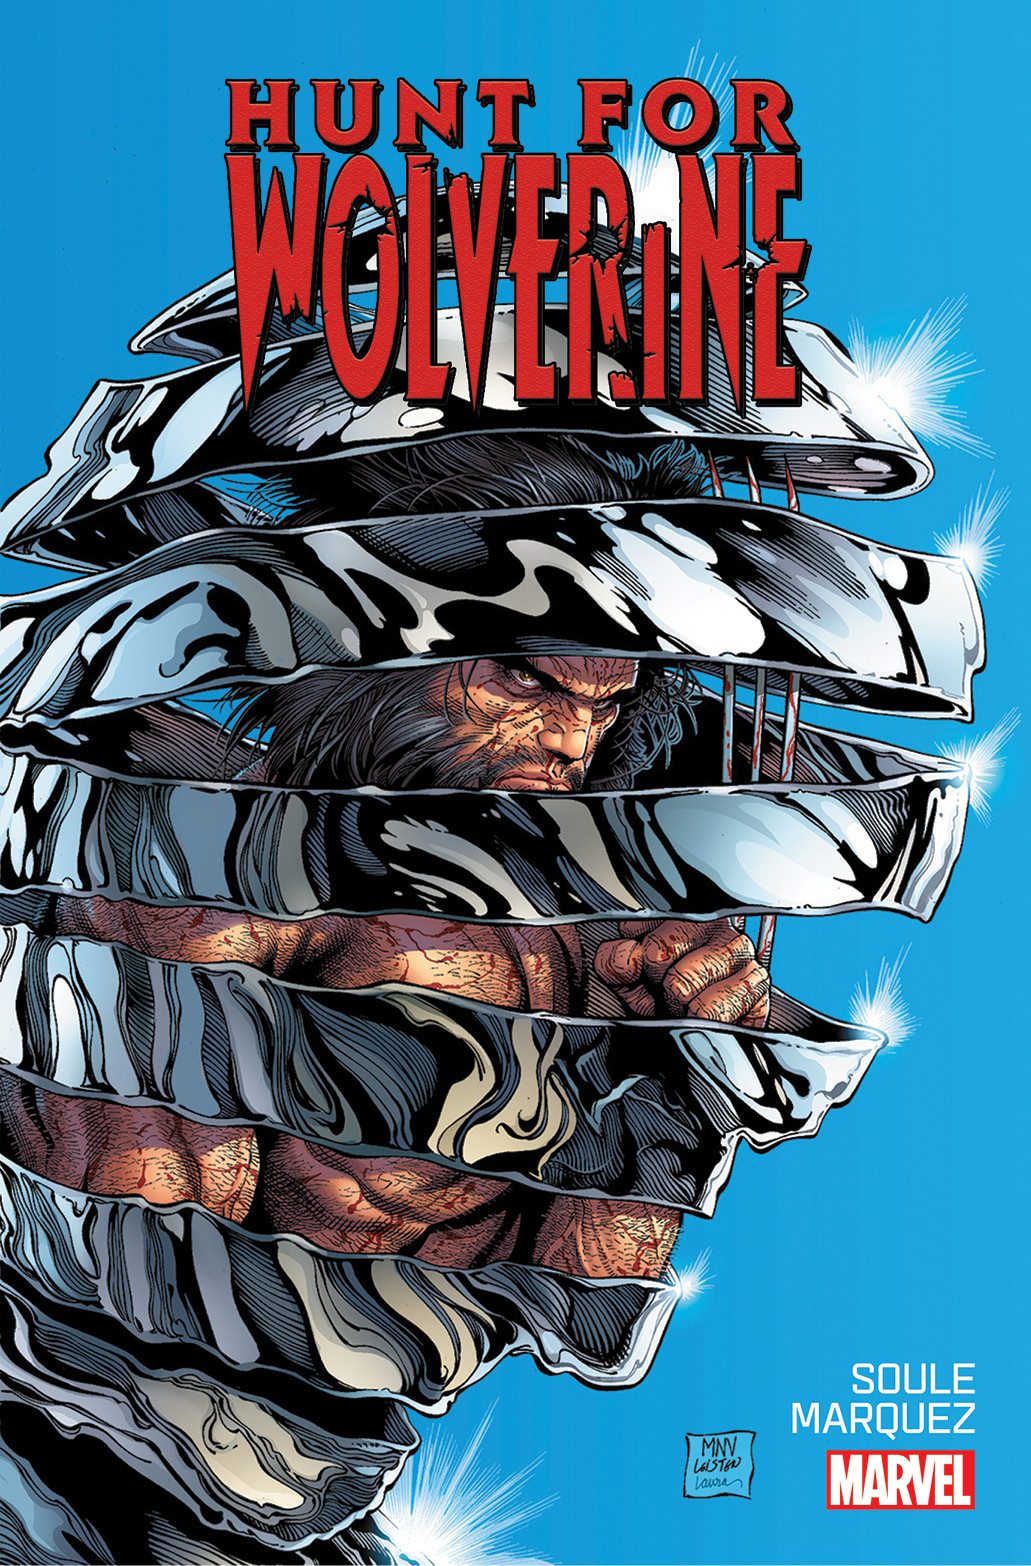 La búsqueda de Wolverine comienza este abril cuando Logan hace su gran regreso al universo Marvel